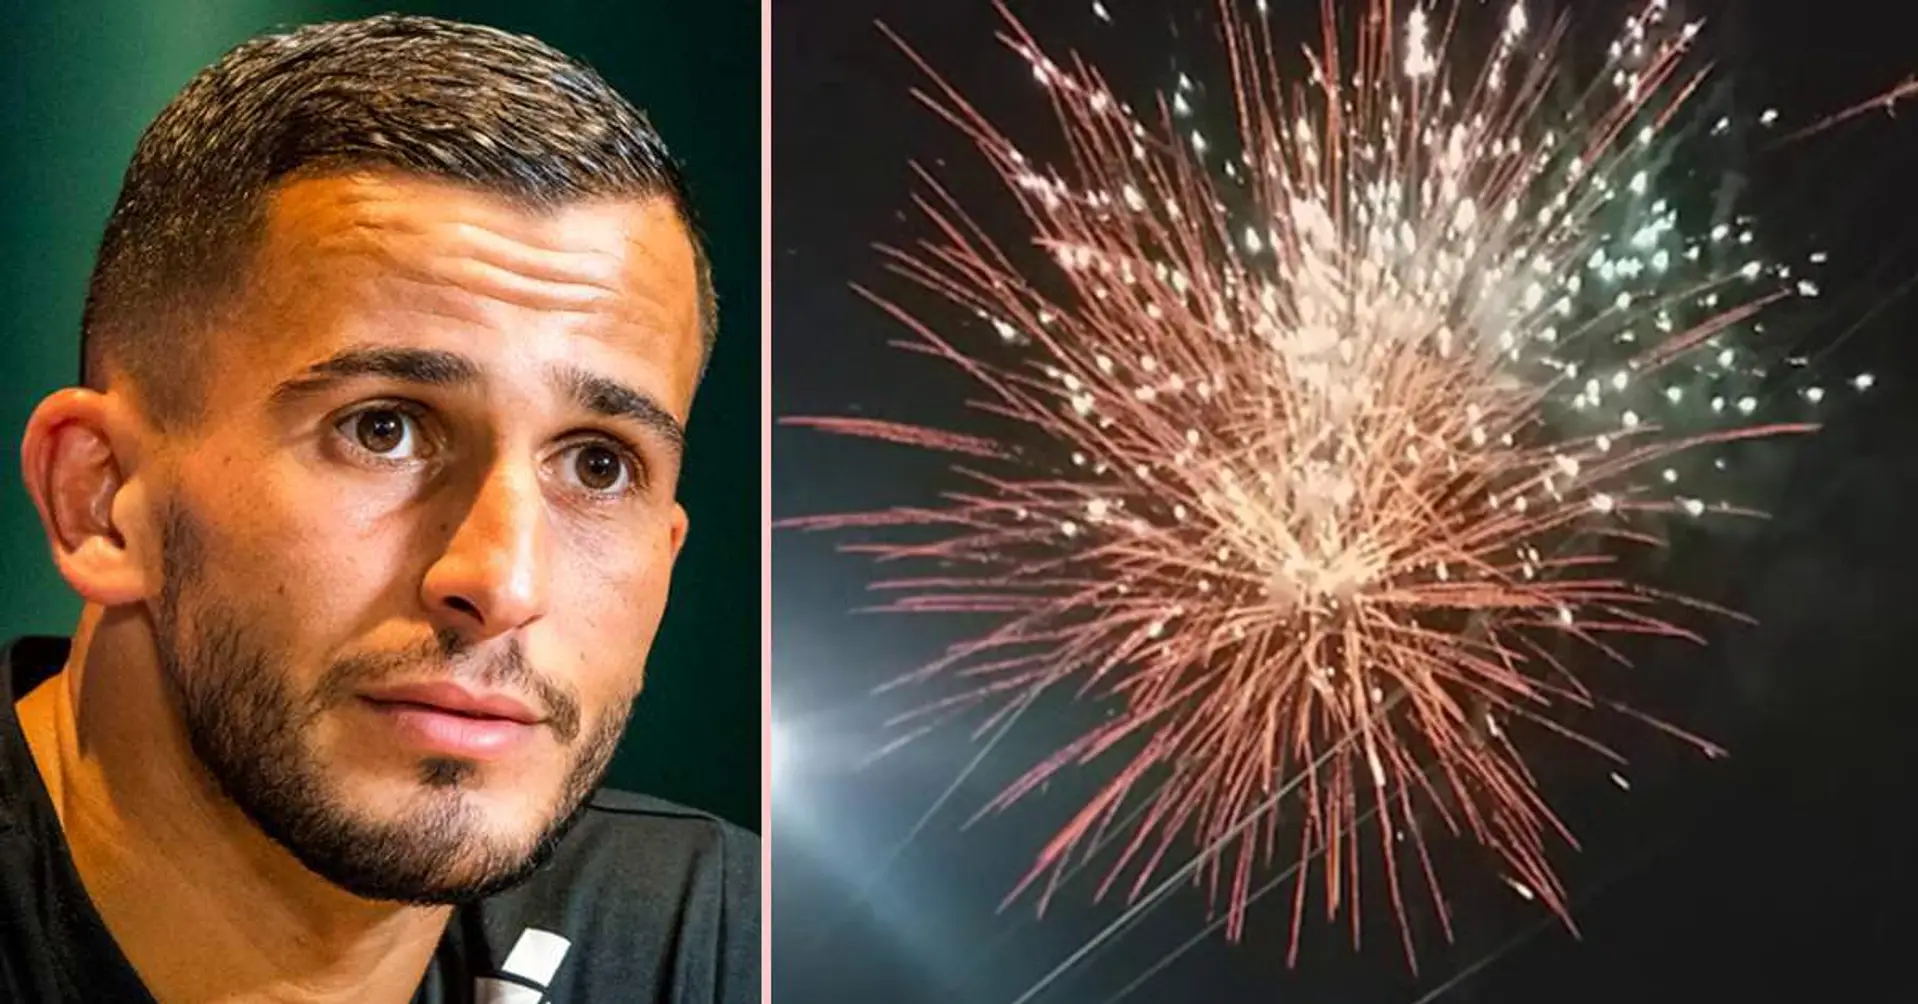 Galatasaray-Star mit Verbrennungen im Gesicht ins Krankenhaus gebracht, nachdem ein Feuerwerk in seiner Hand explodiert war